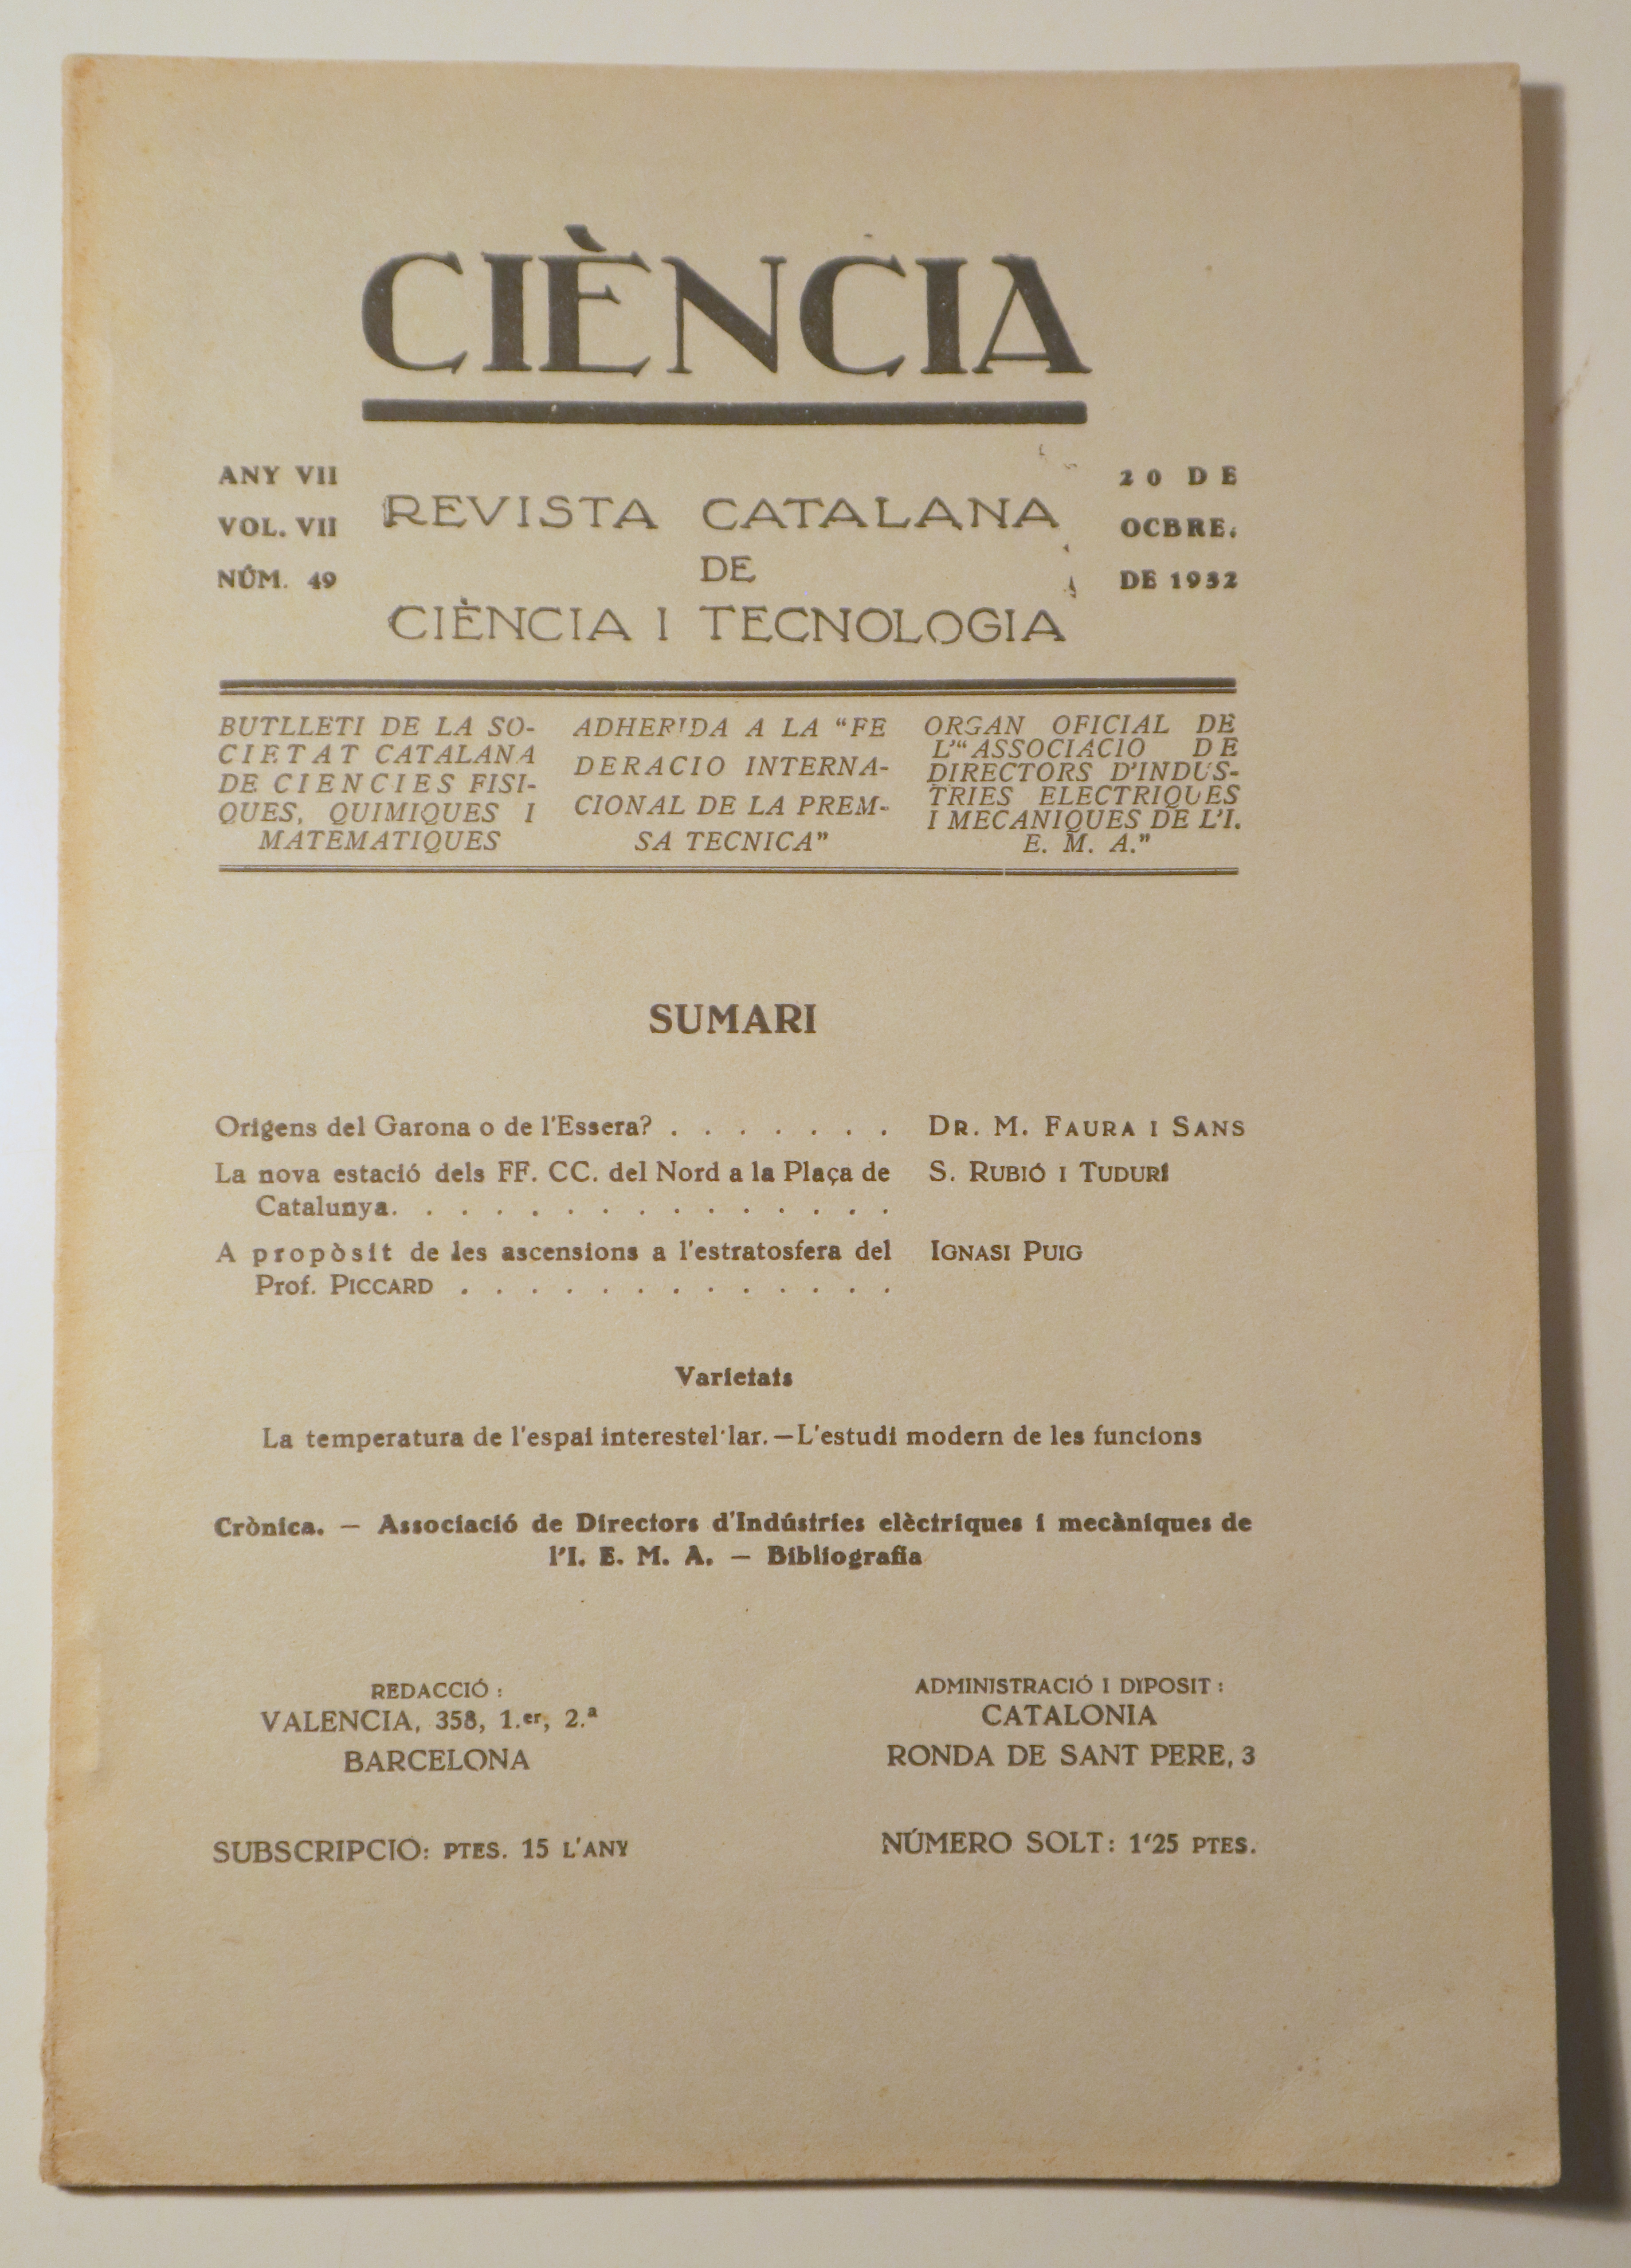 CIÈNCIA. Revista catalana de ciència i tecnologia nº 49, any VII, vol. VII - Barcelona 1932 - Il·lustrat